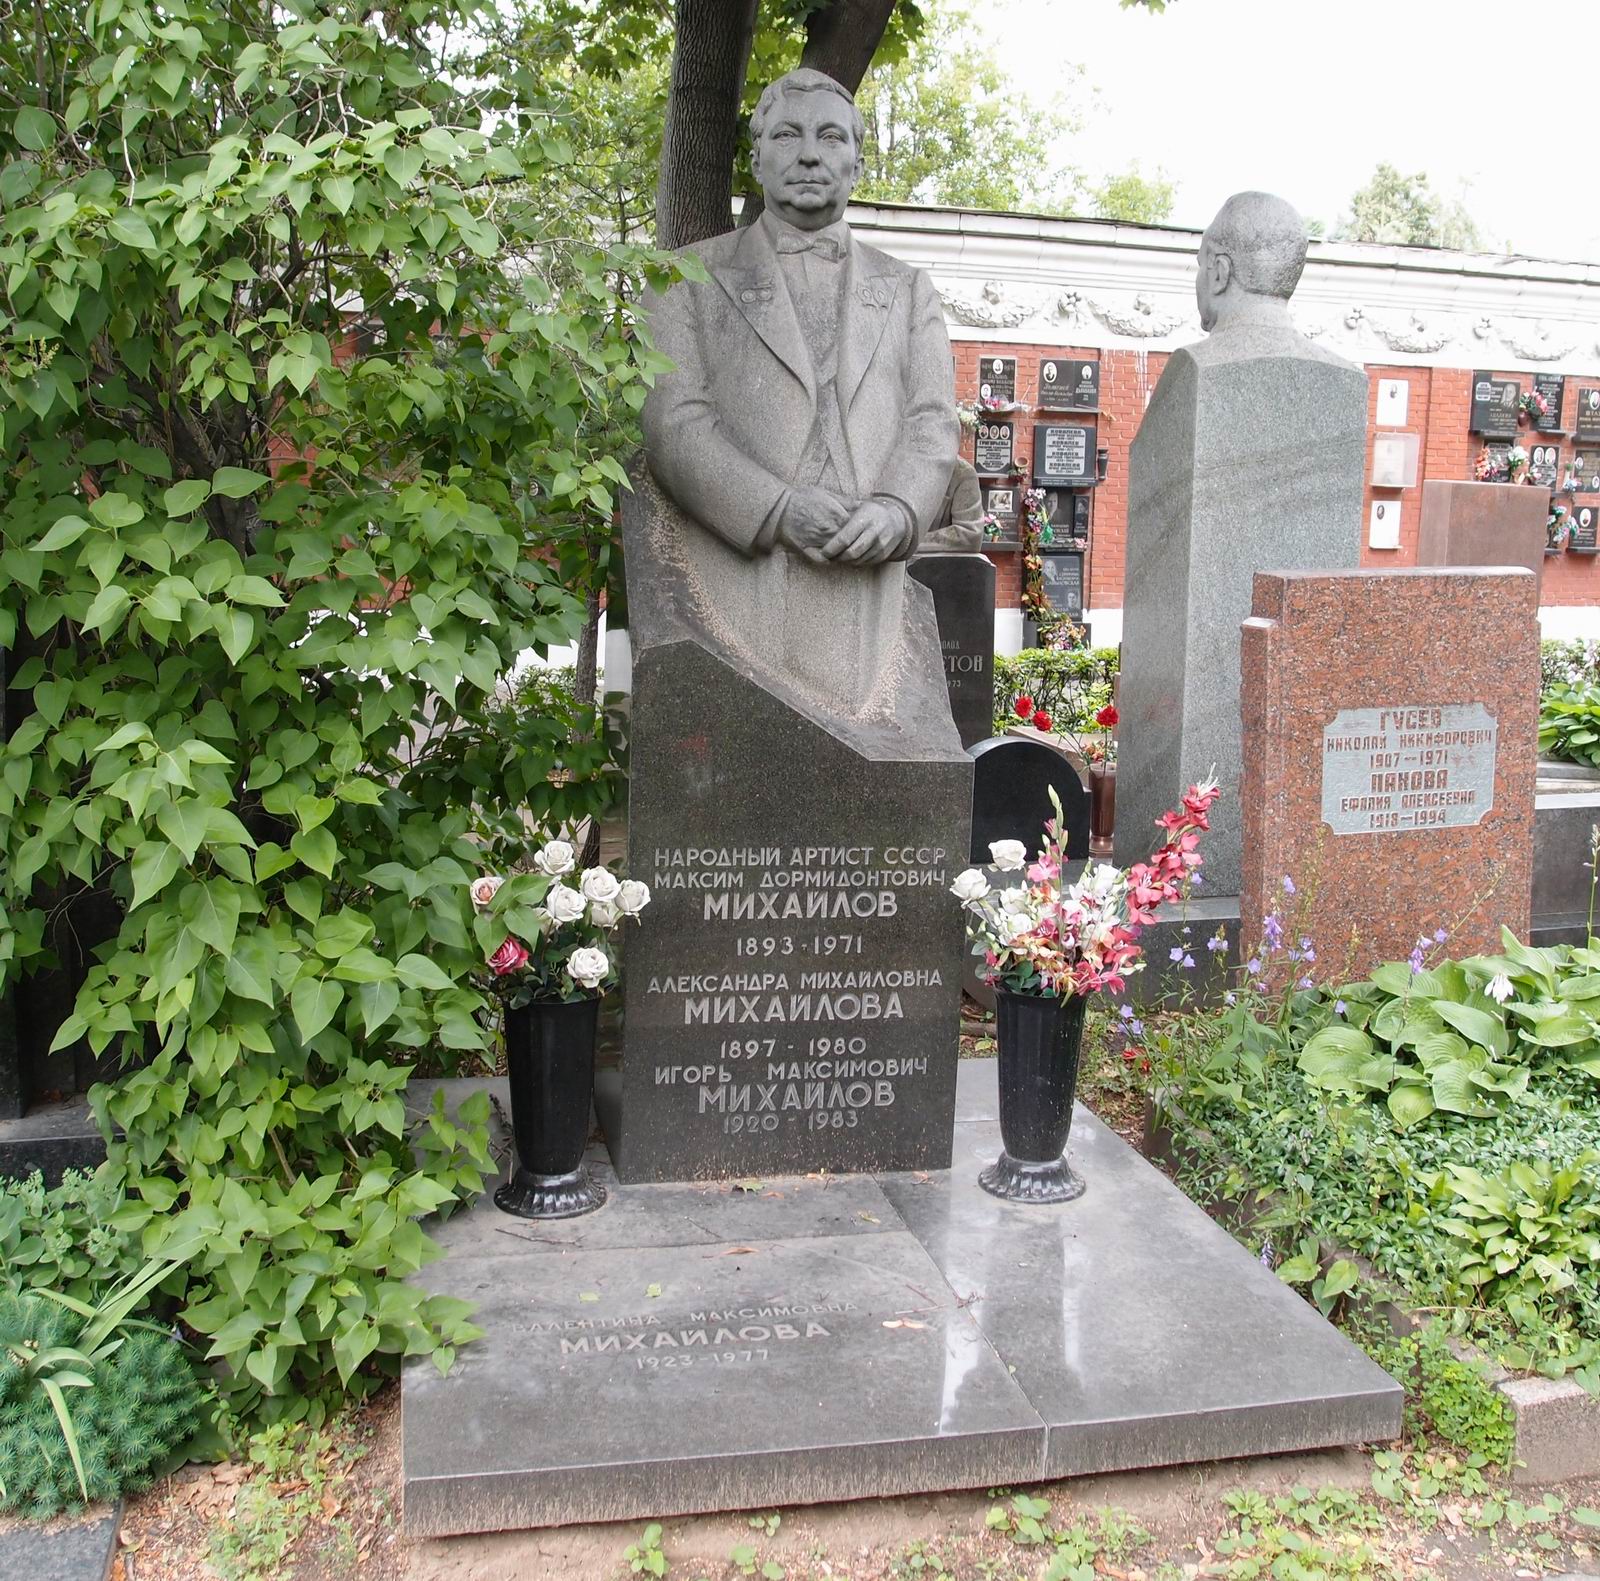 Памятник на могиле Михайлова М.Д. (1893–1971), ск. А.Елецкий, арх. А.Усачёв, на Новодевичьем кладбище (7–19–9). Нажмите левую кнопку мыши, чтобы увидеть часть памятника крупно.